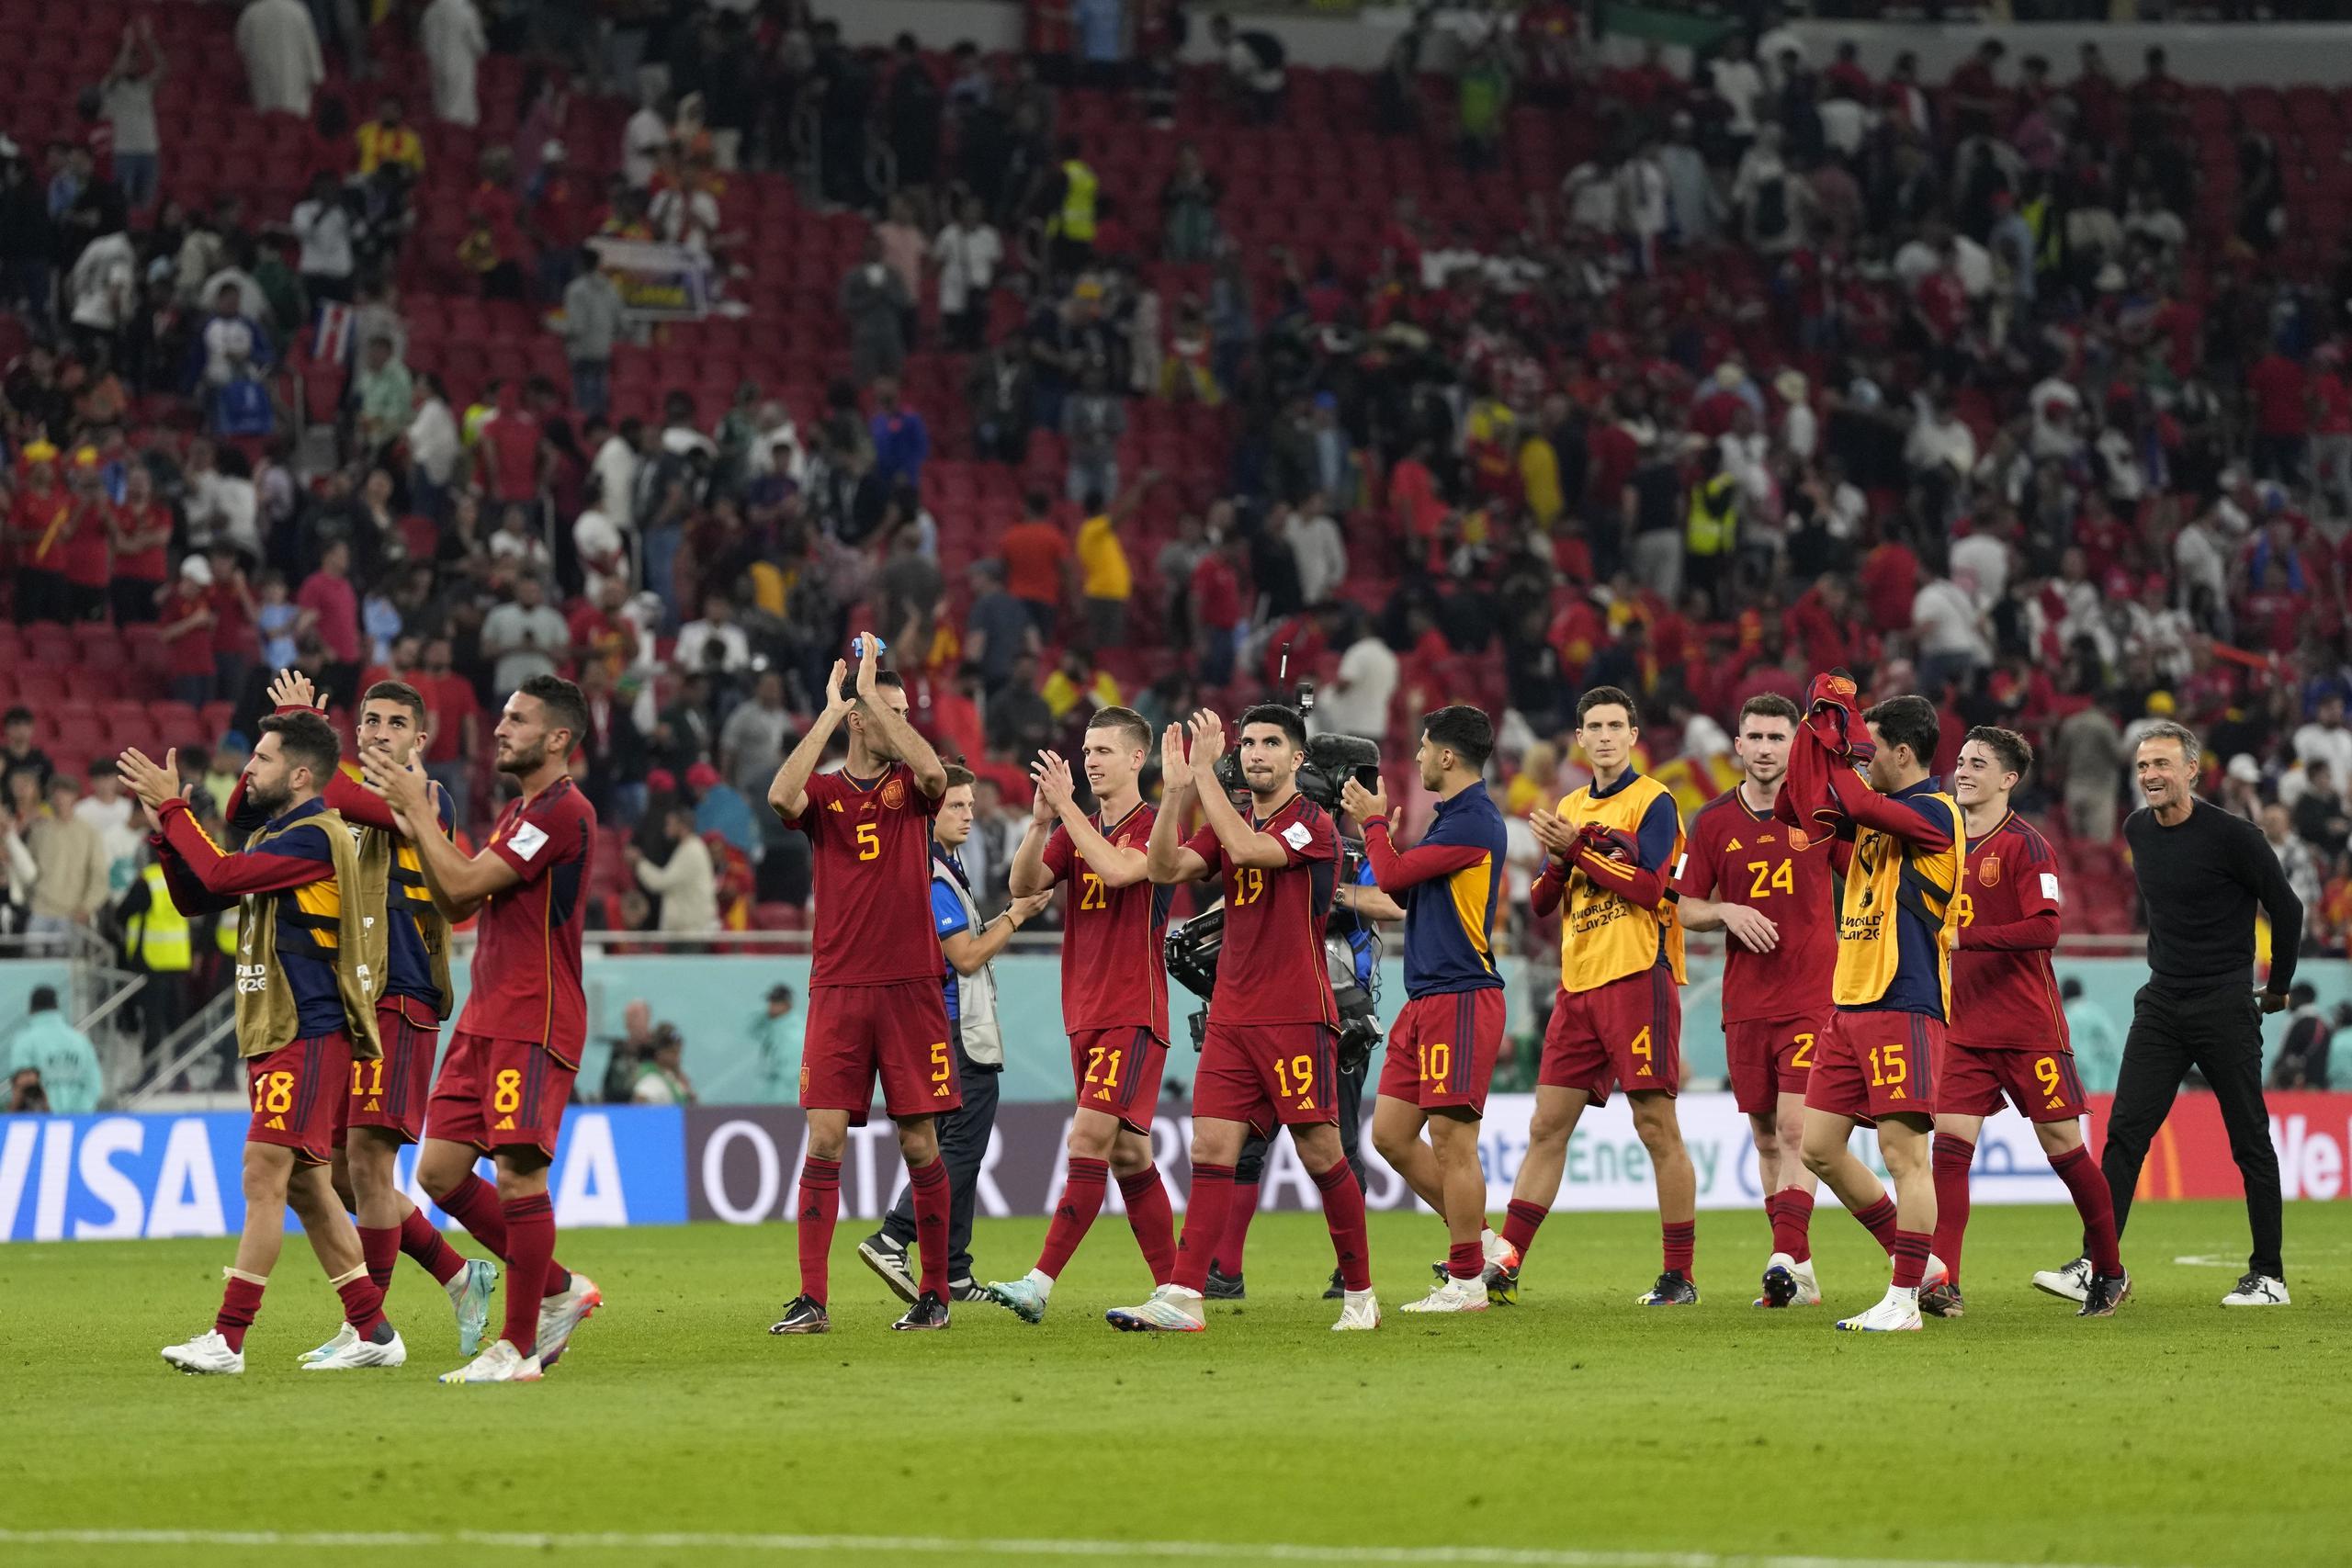 Los jugadores de la selección española y su entrenador, Luis Enrique (derecha), saludan a los aficionados tras su victoria en el juego del Grupo E del Mundial frente a Costa Rica, en el estadio Al Thumama, en Doha, Qatar.